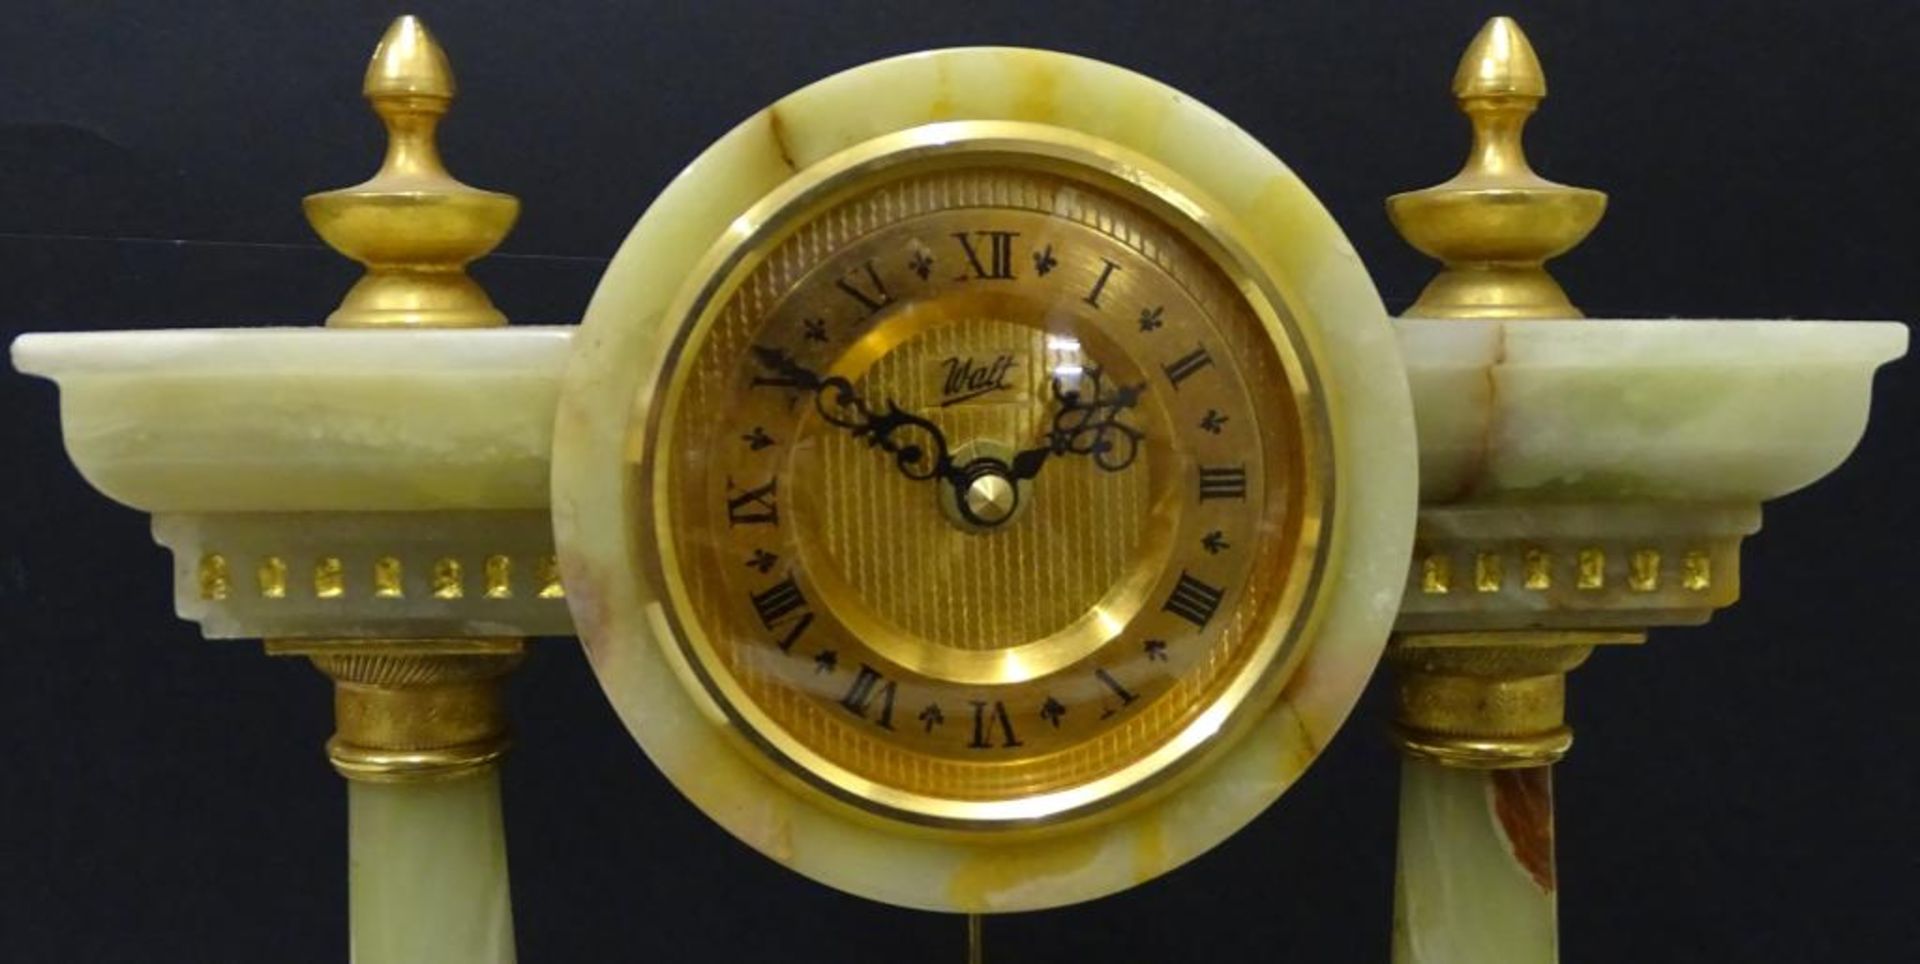 Portal-Uhr "Walt", Onyxgehäuse, H-32 cm, B-26 cm, Funktion nicht geprü - Bild 3 aus 5